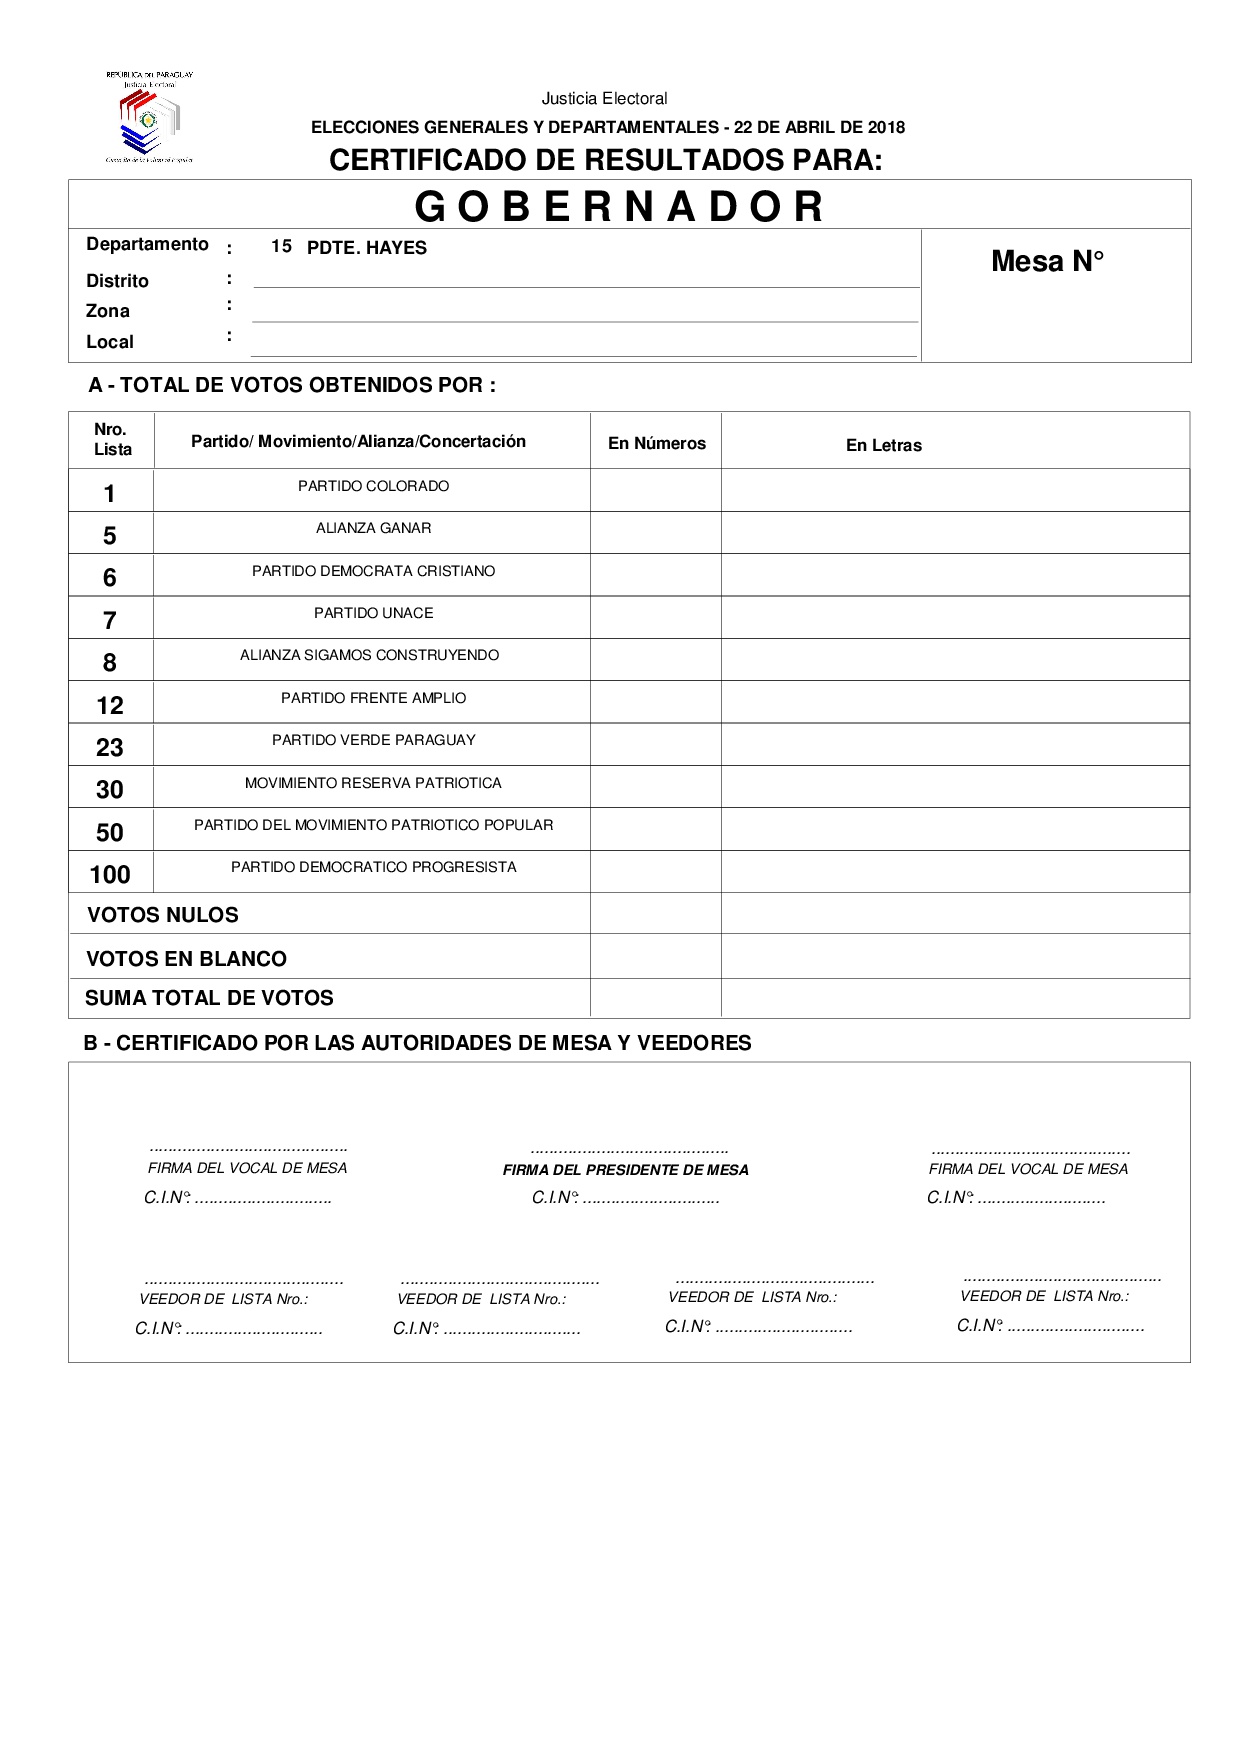 Certificado de Resultados Para GOBERNADOR de PDTE HAYES